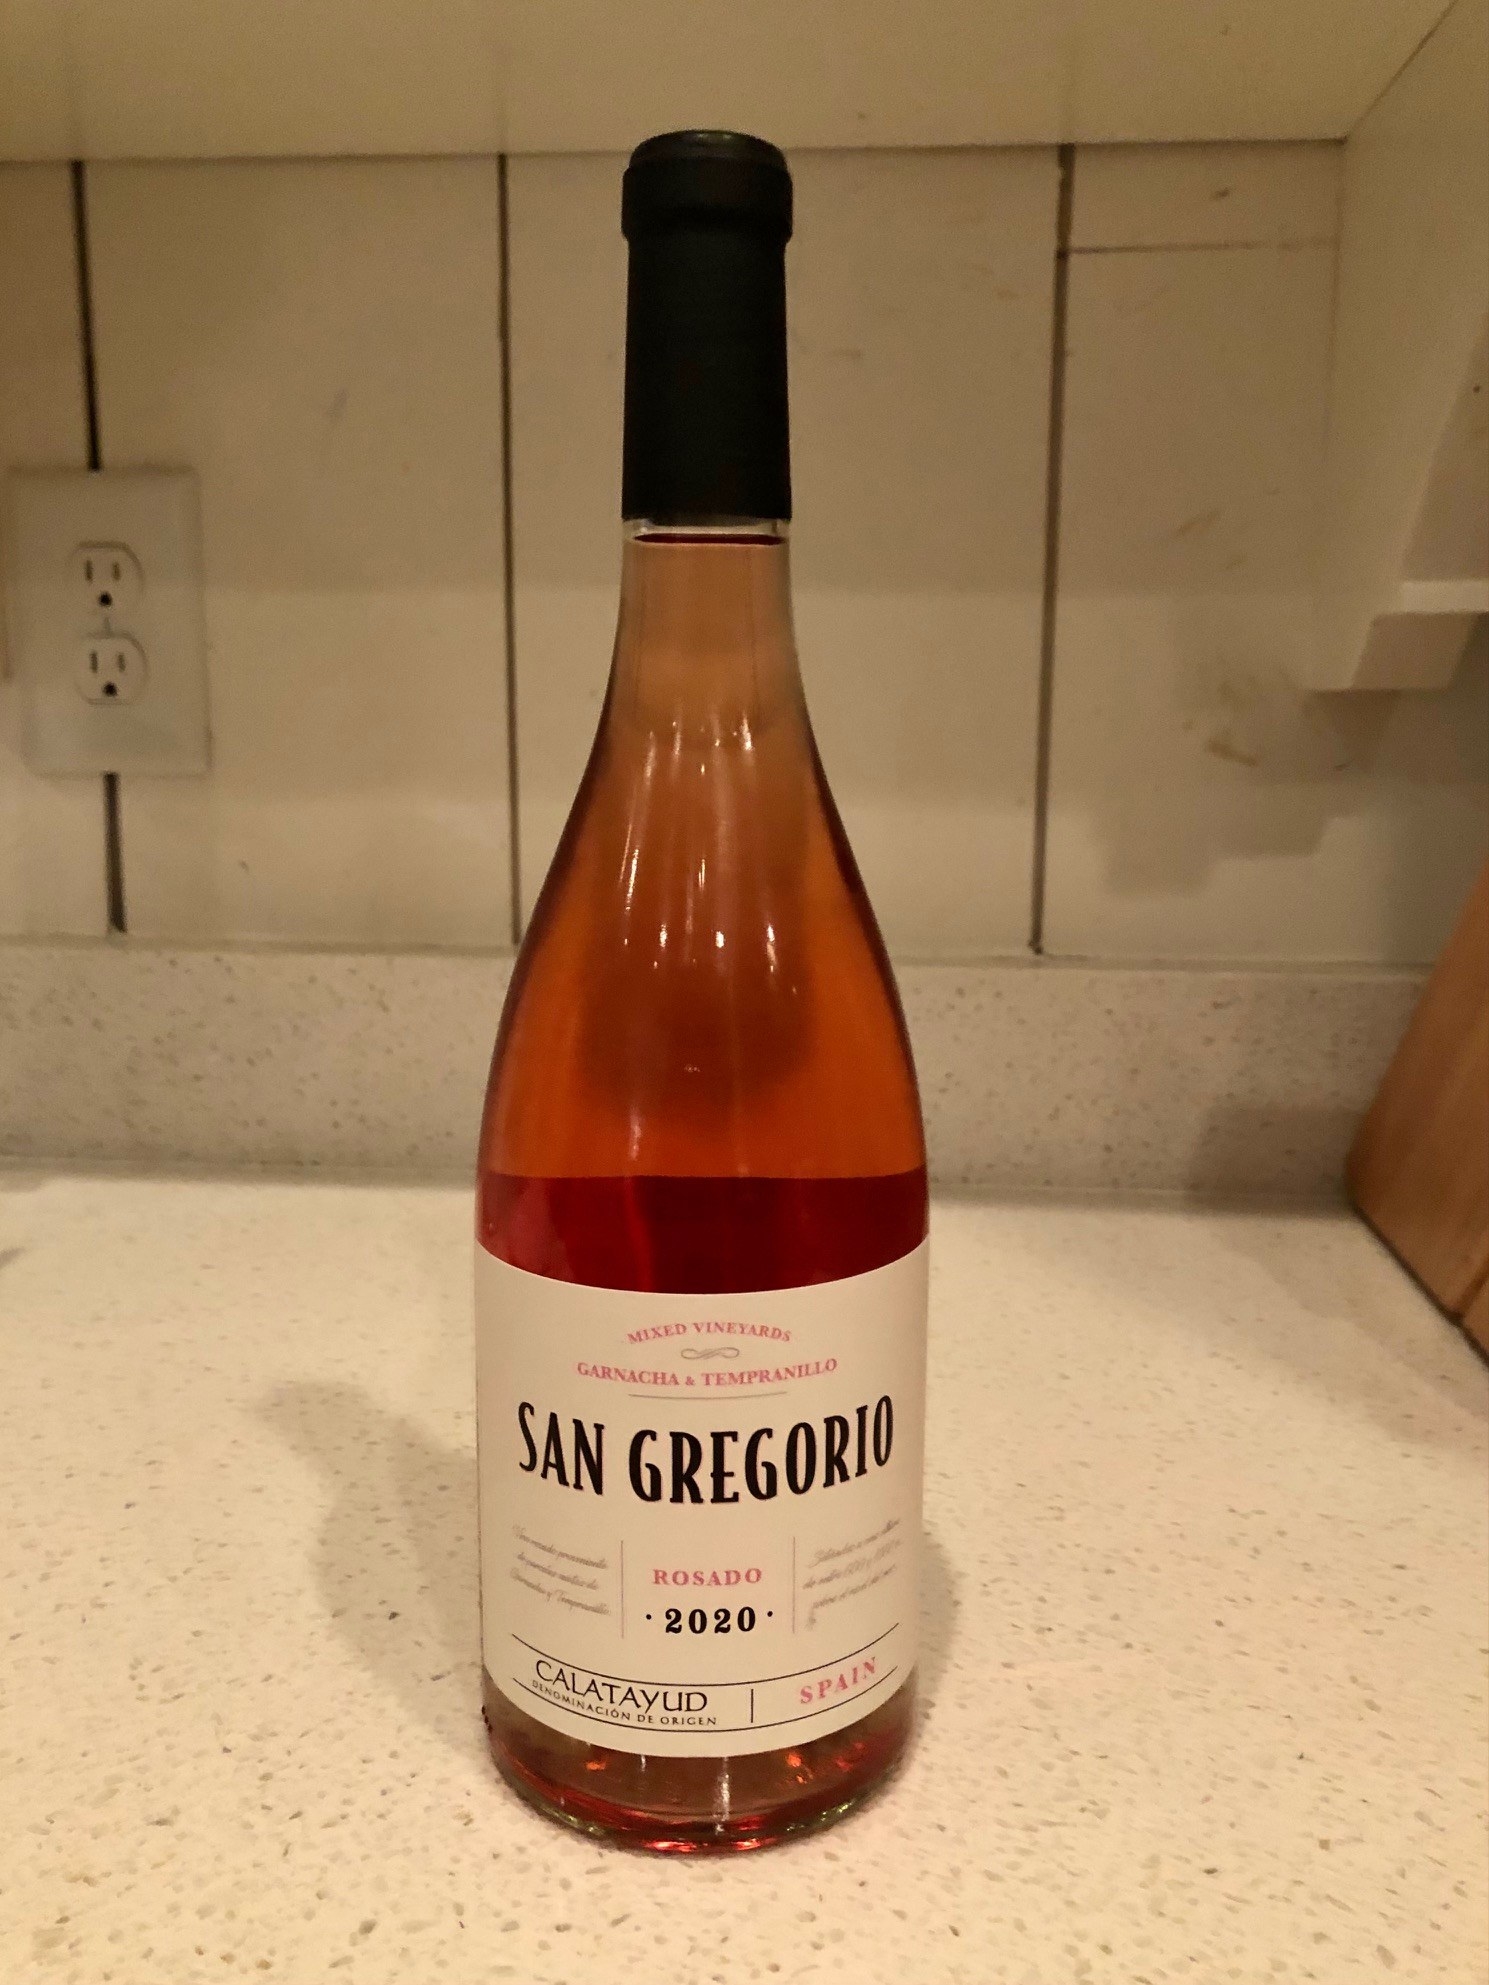 Bottle of pink Rosado wine